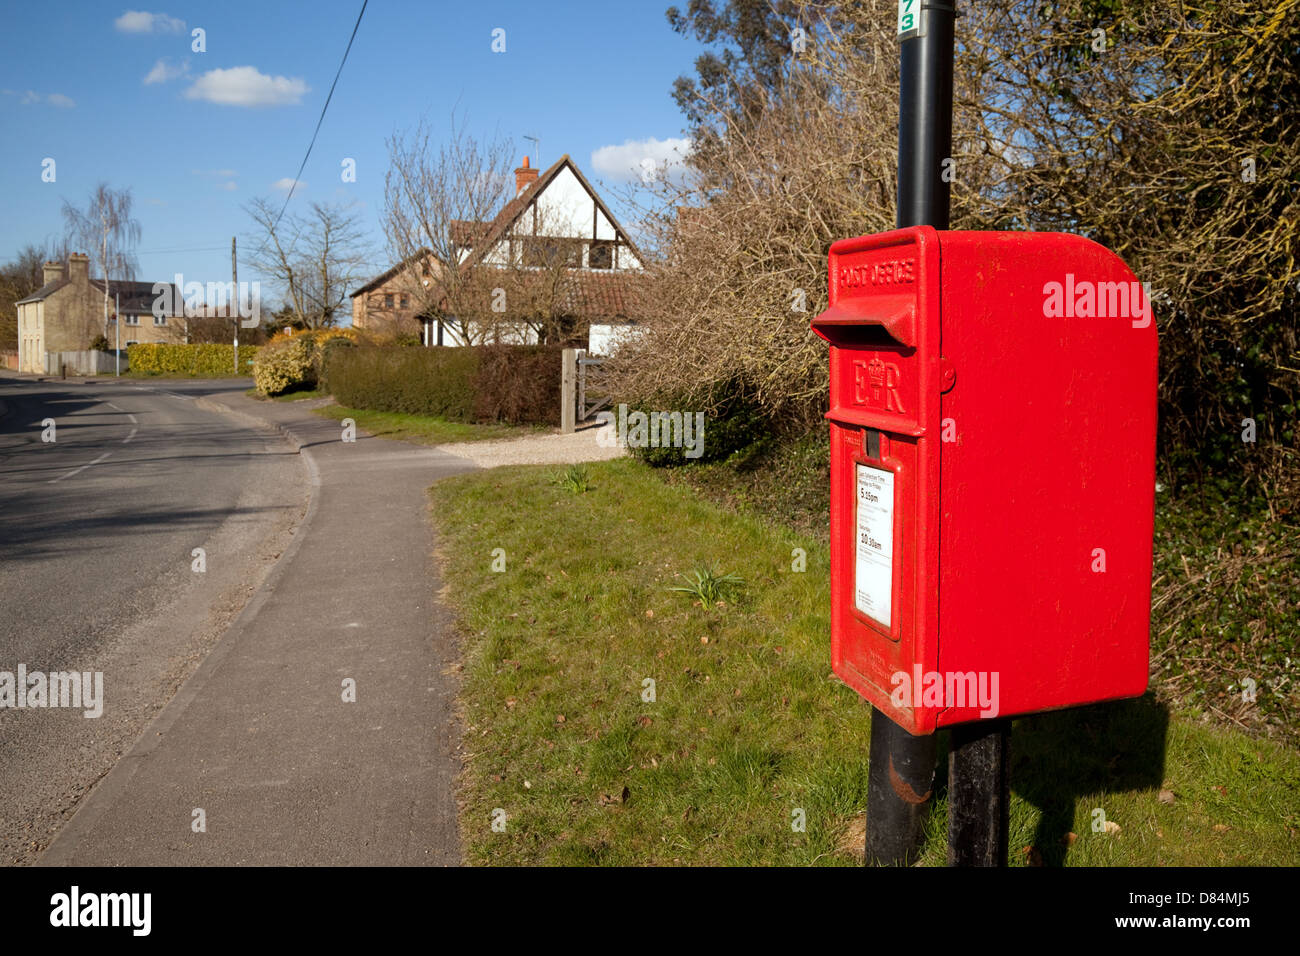 Un village rouge royal mail postbox boîte aux lettres, Swaffham Prior, Cambridgeshire UK Banque D'Images